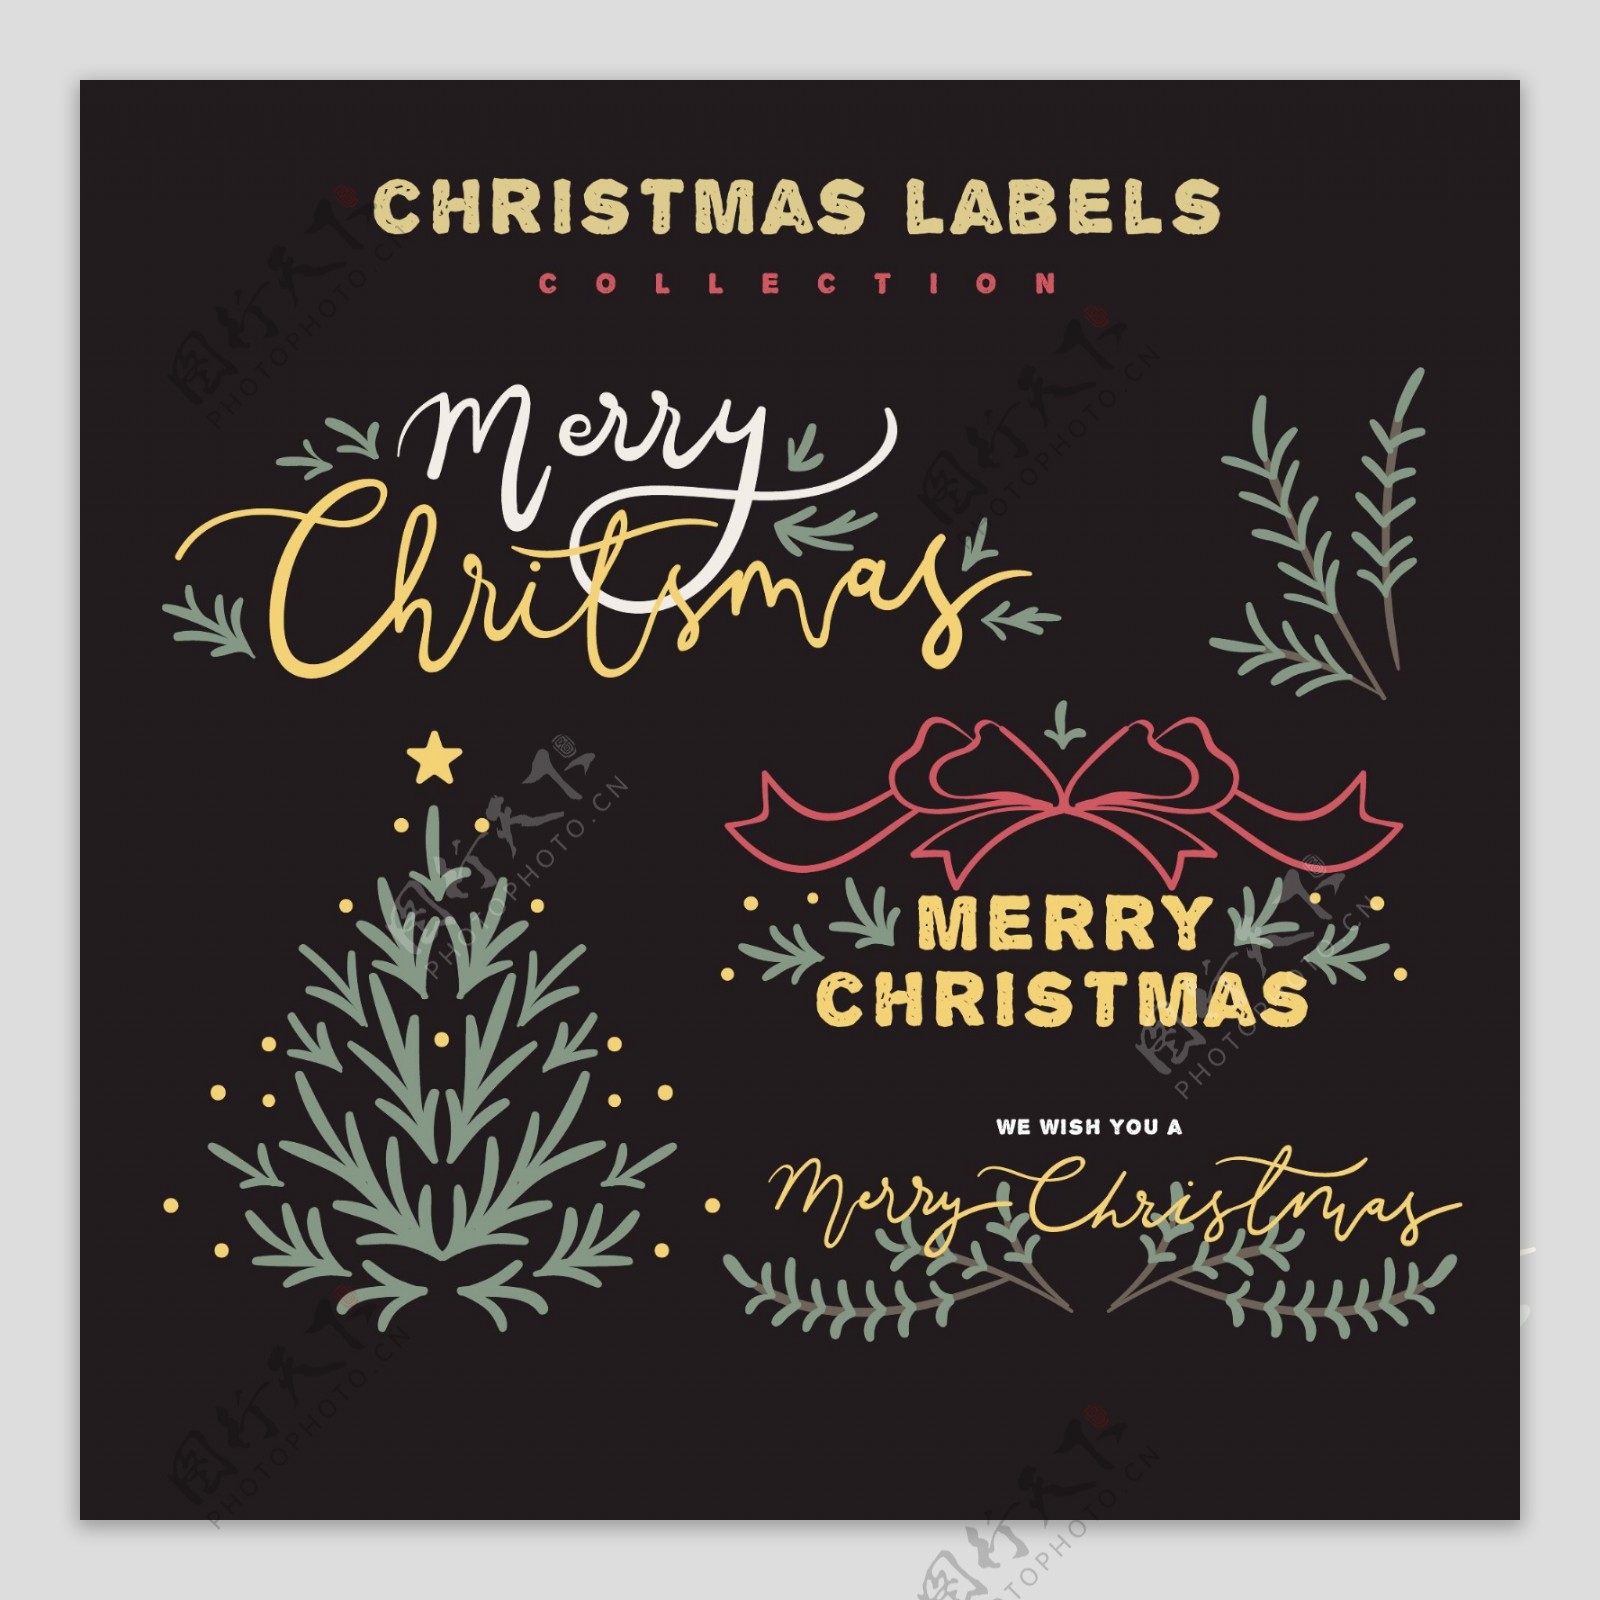 彩色圣诞标签设计元素